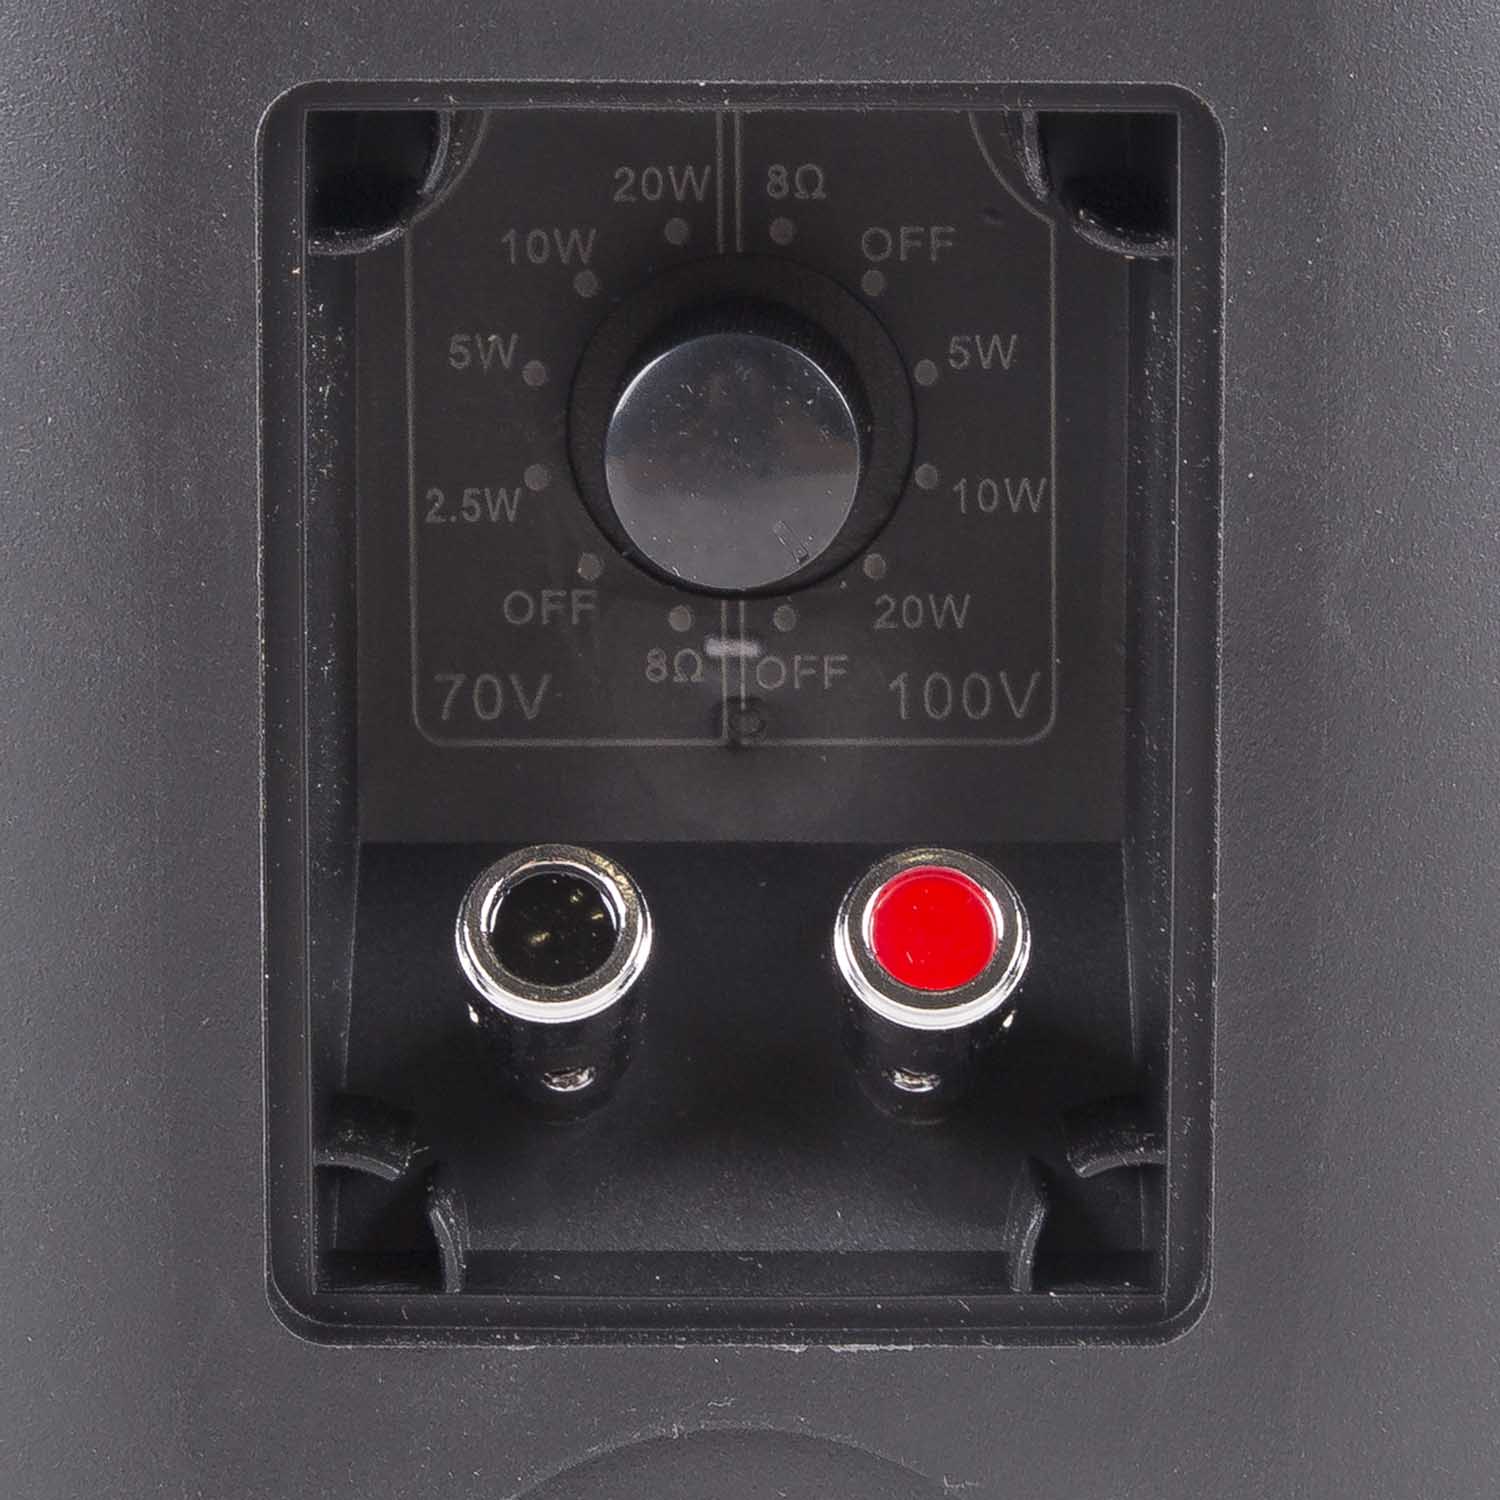 XB420B power switch